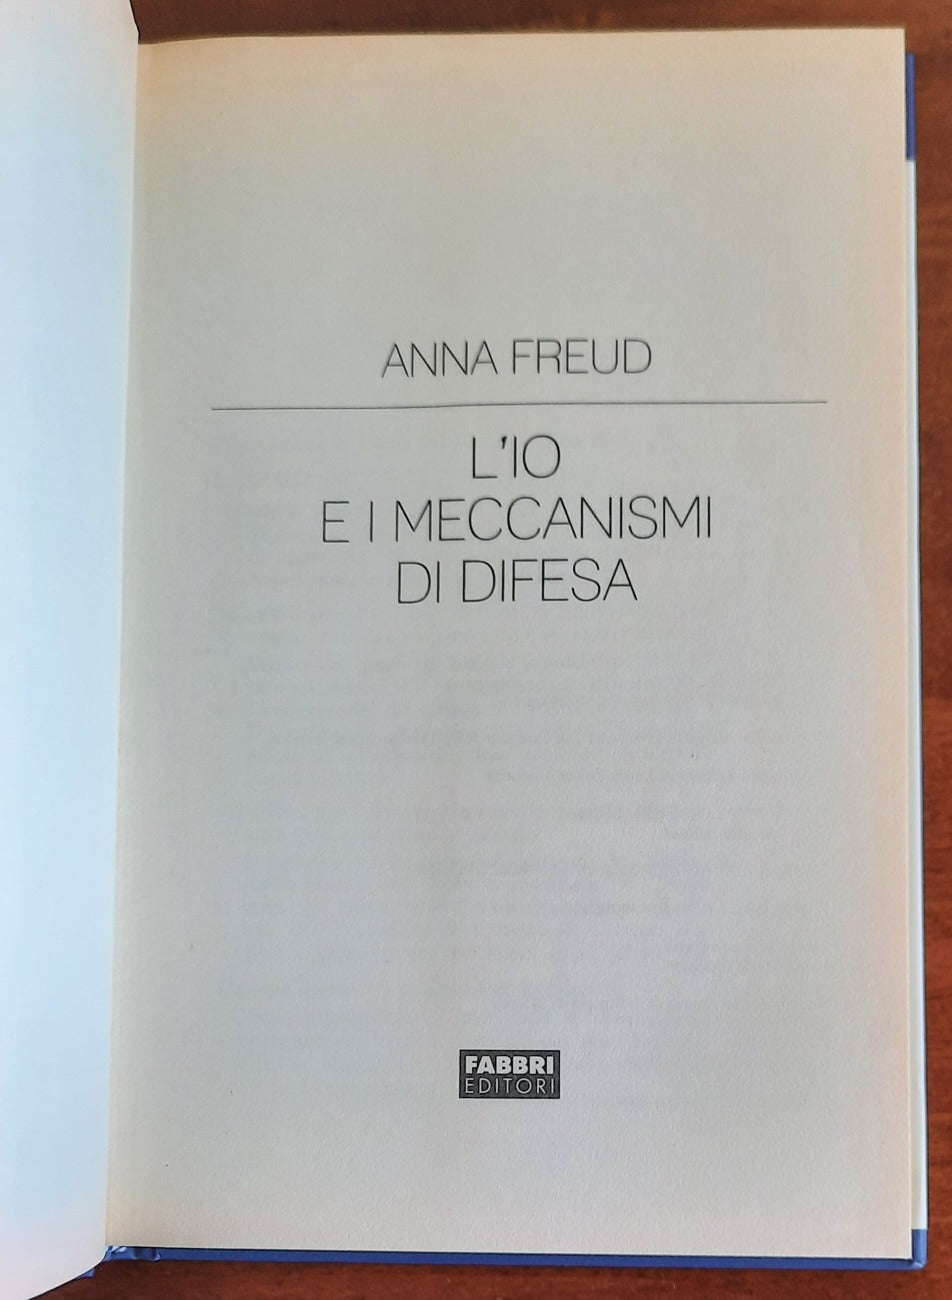 L’Io e i meccanismi di difesa - di Anna Freud